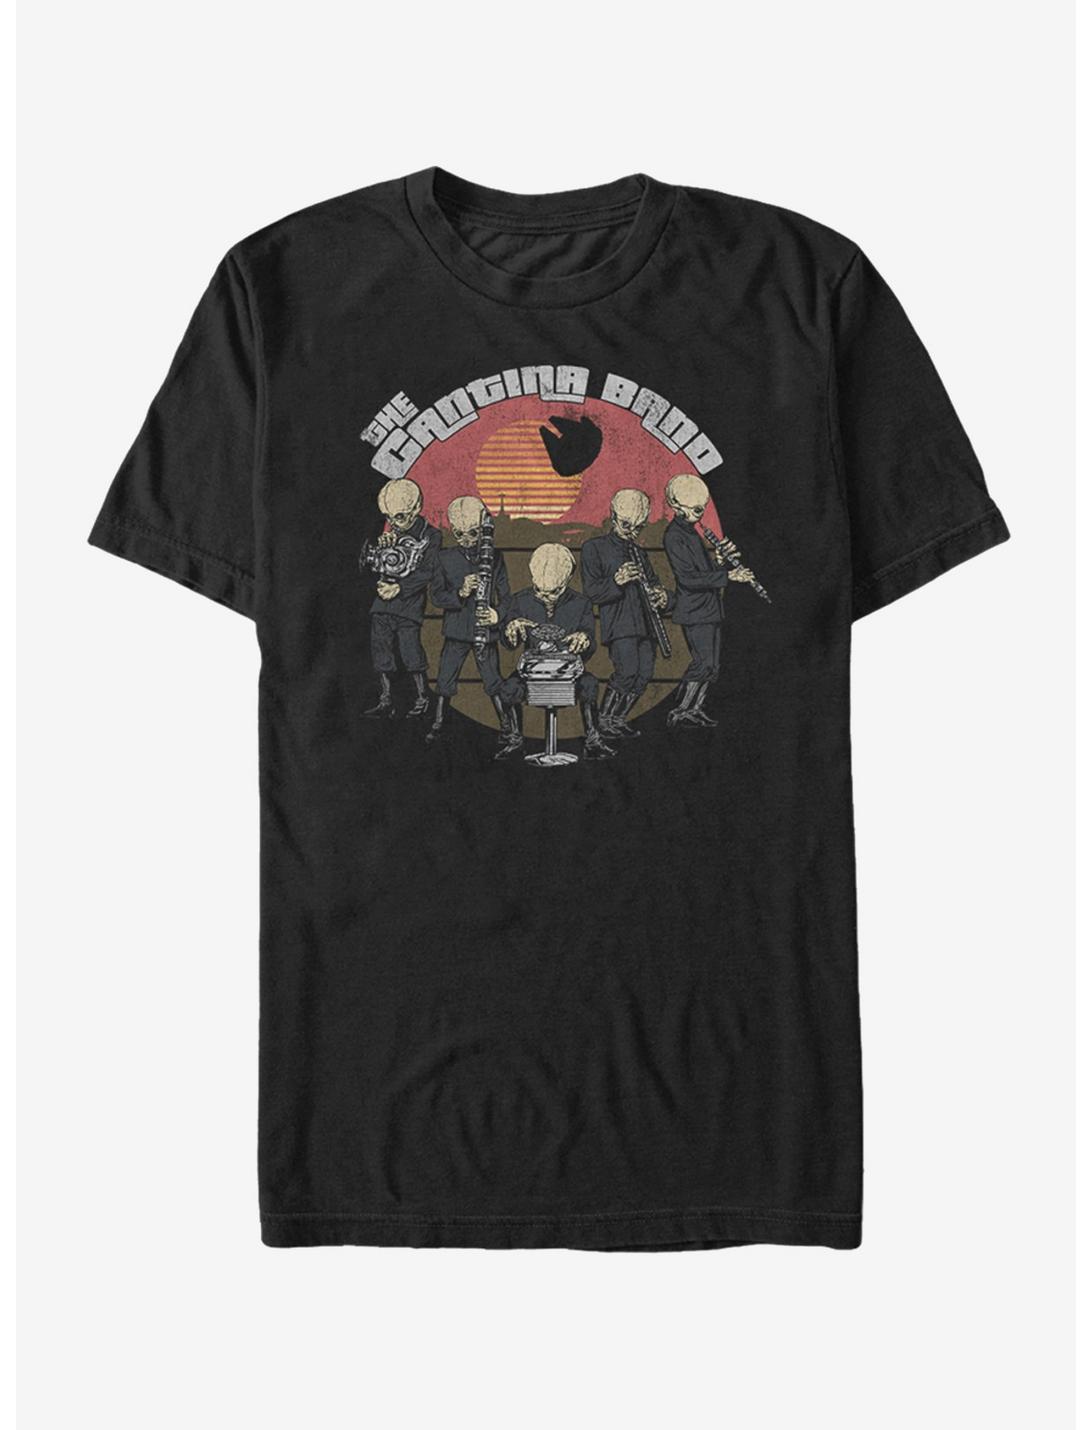 Star Wars Cantina Bith Band T-Shirt, BLACK, hi-res